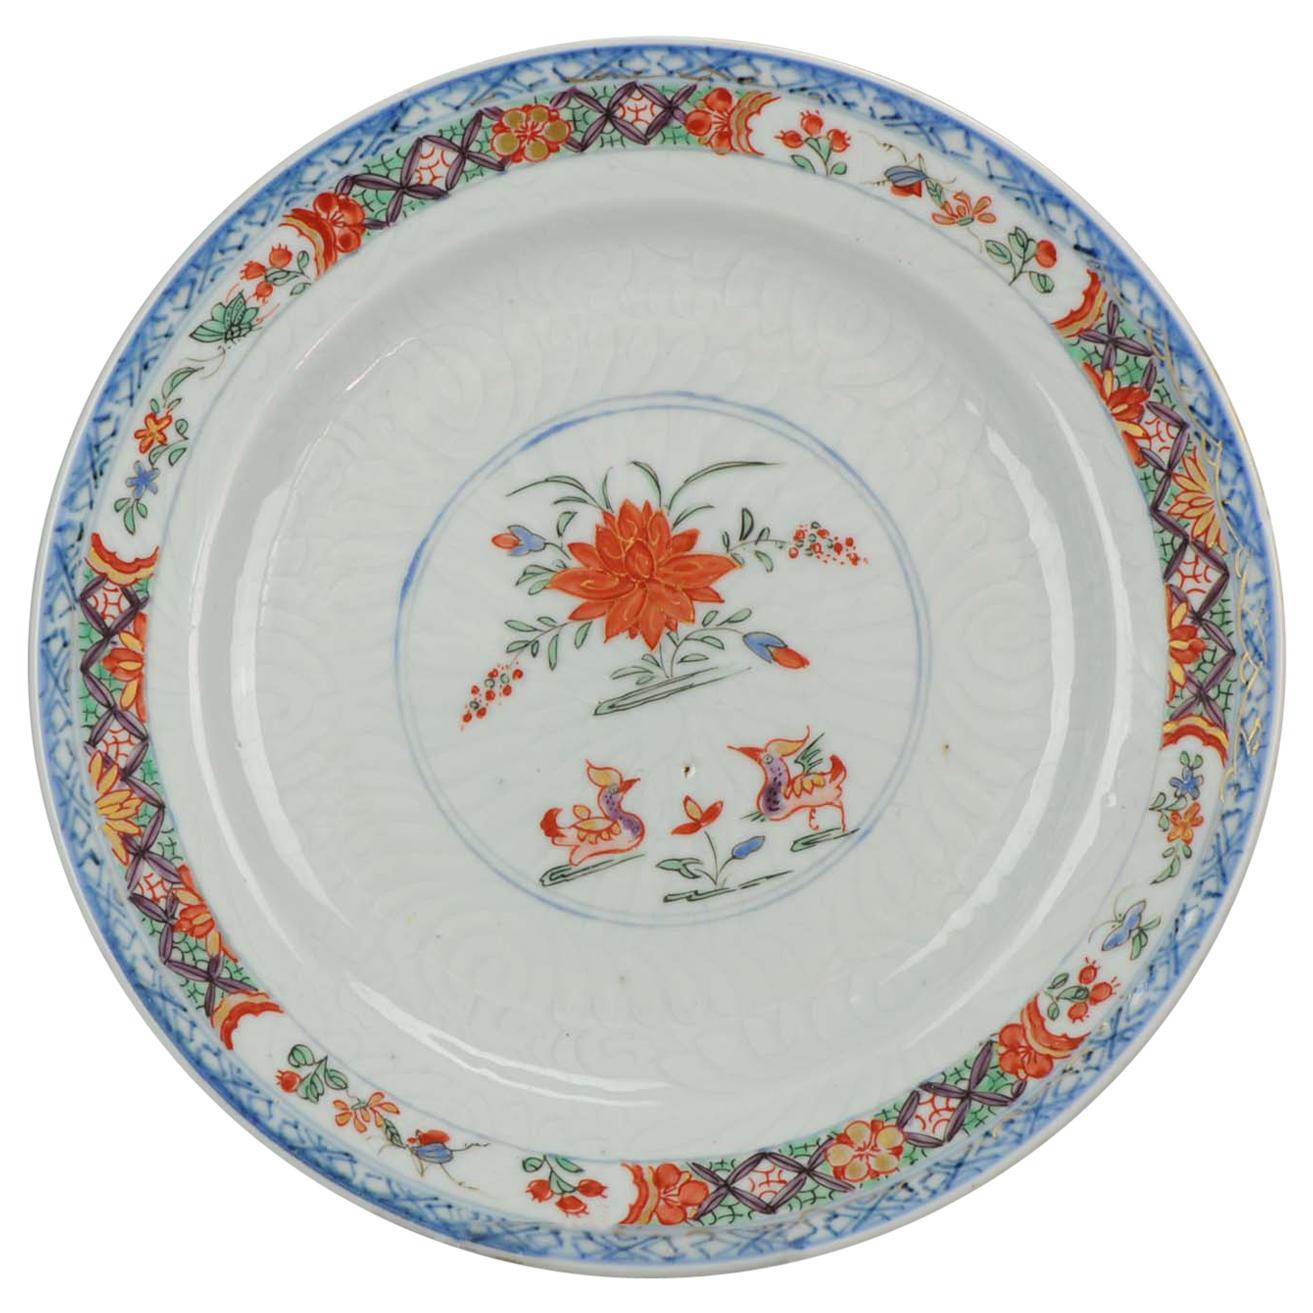 Ancienne et rare assiette en porcelaine chinoise Famille Verte du 18ème siècle